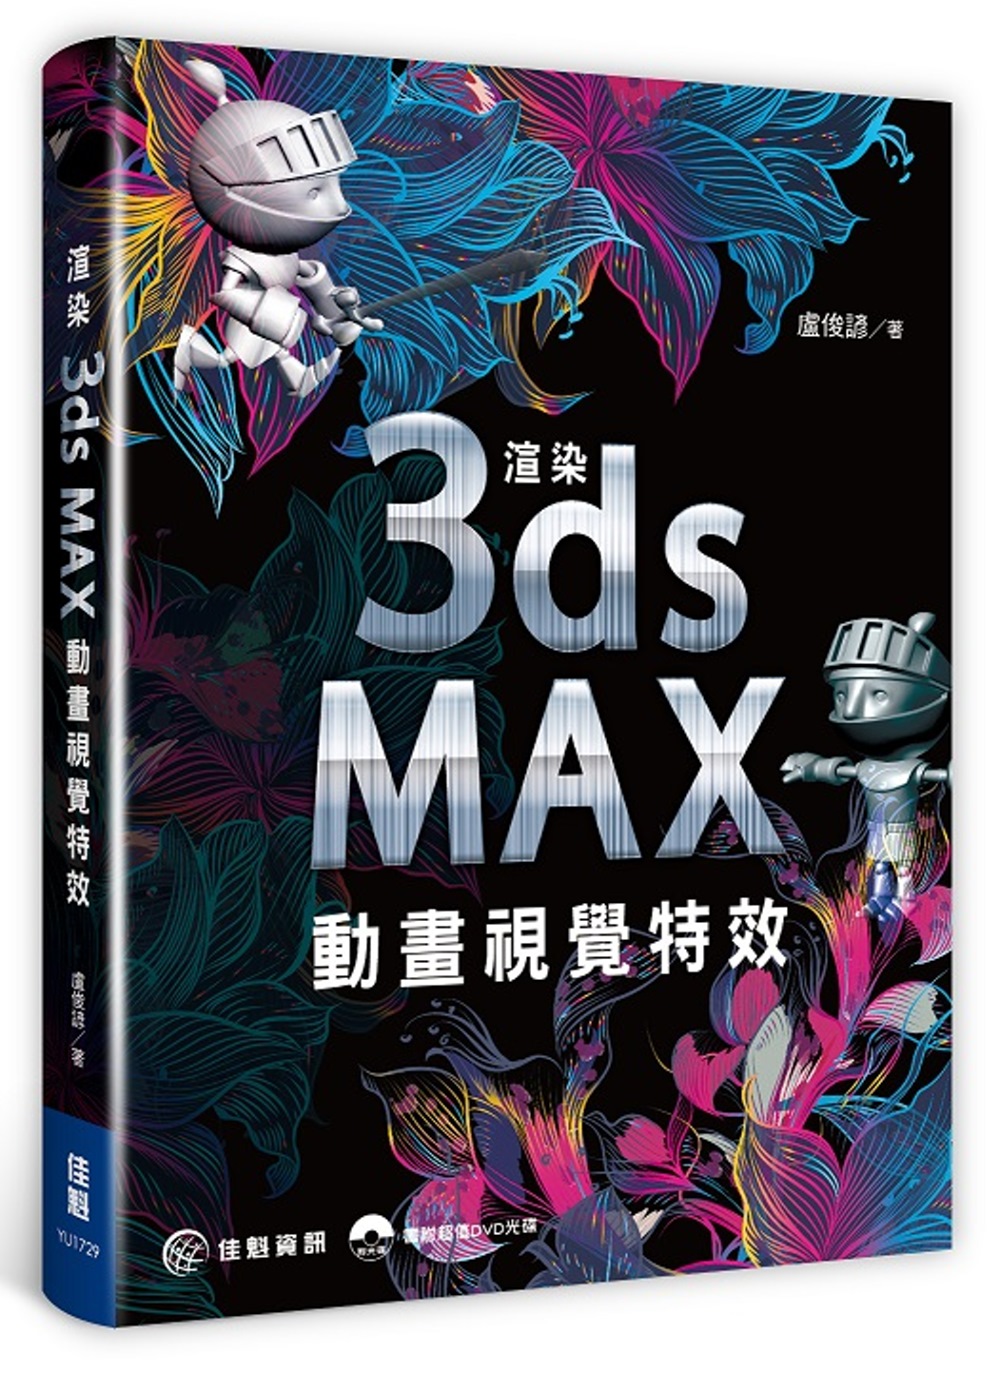 渲染3ds Max動畫視覺特效(附DVD)